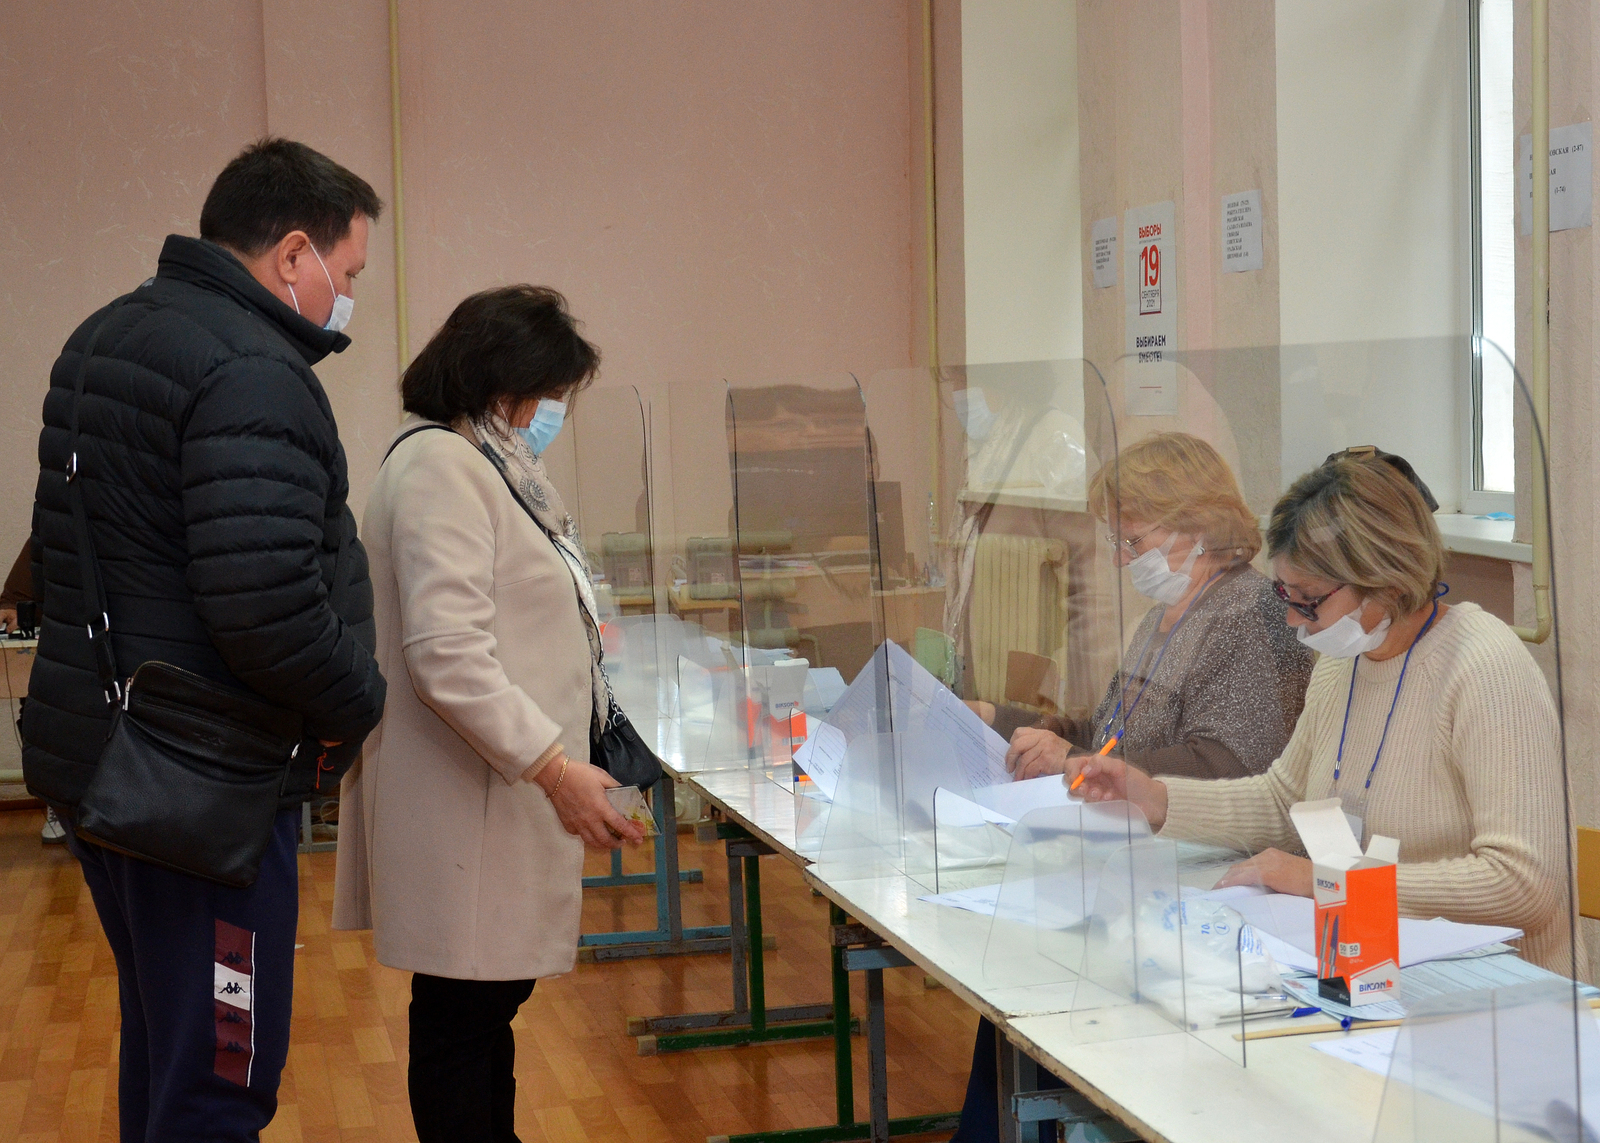 В стране  стартовал финальный день голосования на выборах в Госдуму. В Благоварском районе Башкирии все УИК ждут избирателей.